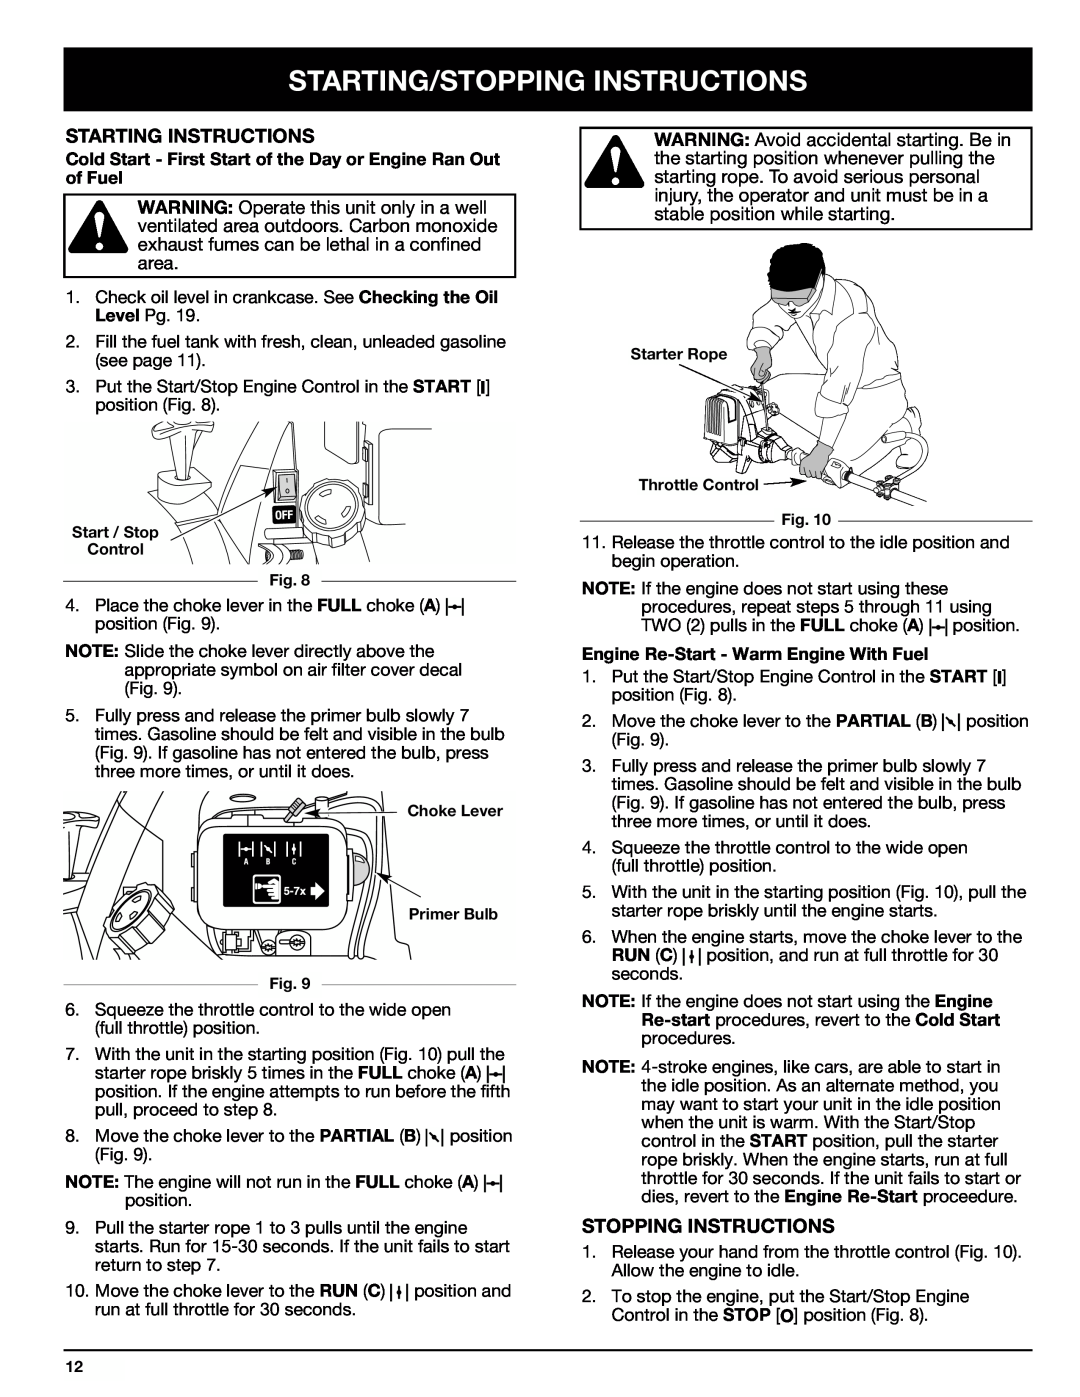 Ryobi Outdoor 875r manual Starting/Stopping Instructions, Starting Instructions 